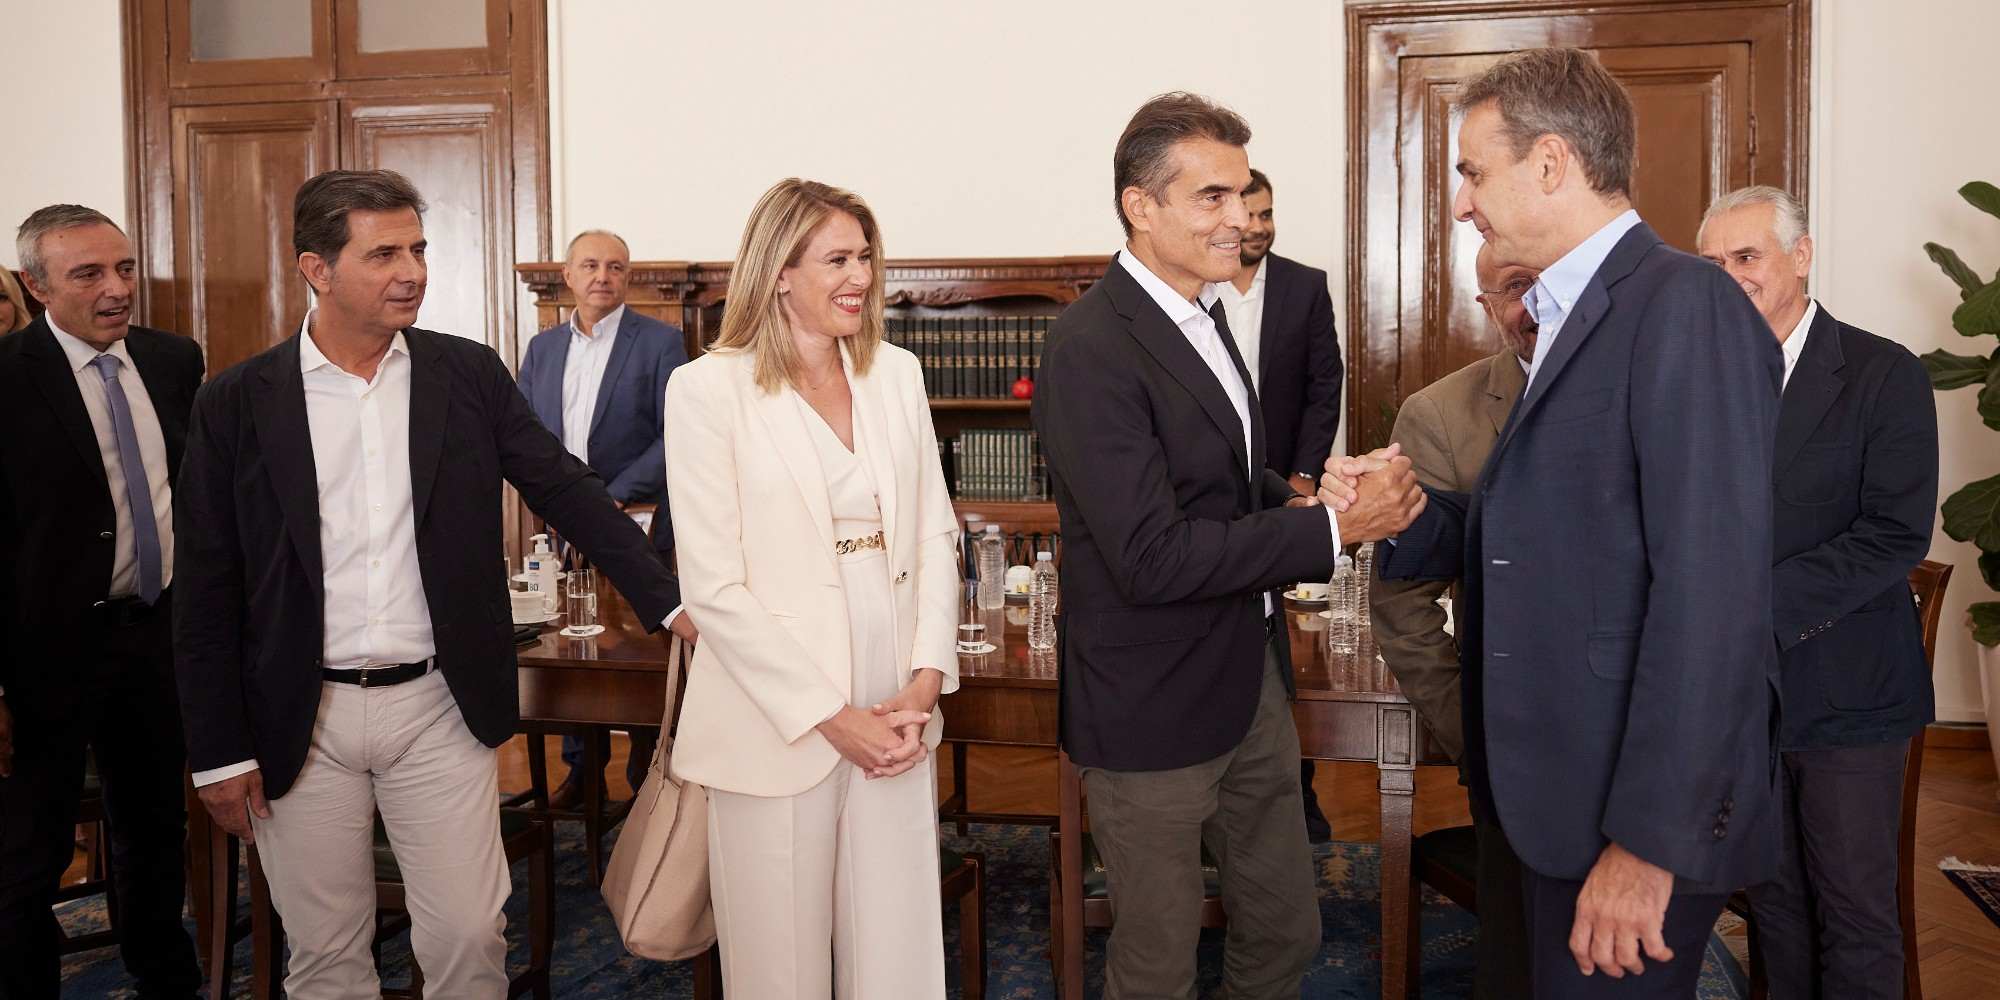  Σύσκεψη του πρωθυπουργού, Κυριάκου Μητσοτάκη, με παραγωγικούς και επιστημονικούς φορείς στη Θεσσαλονίκη 